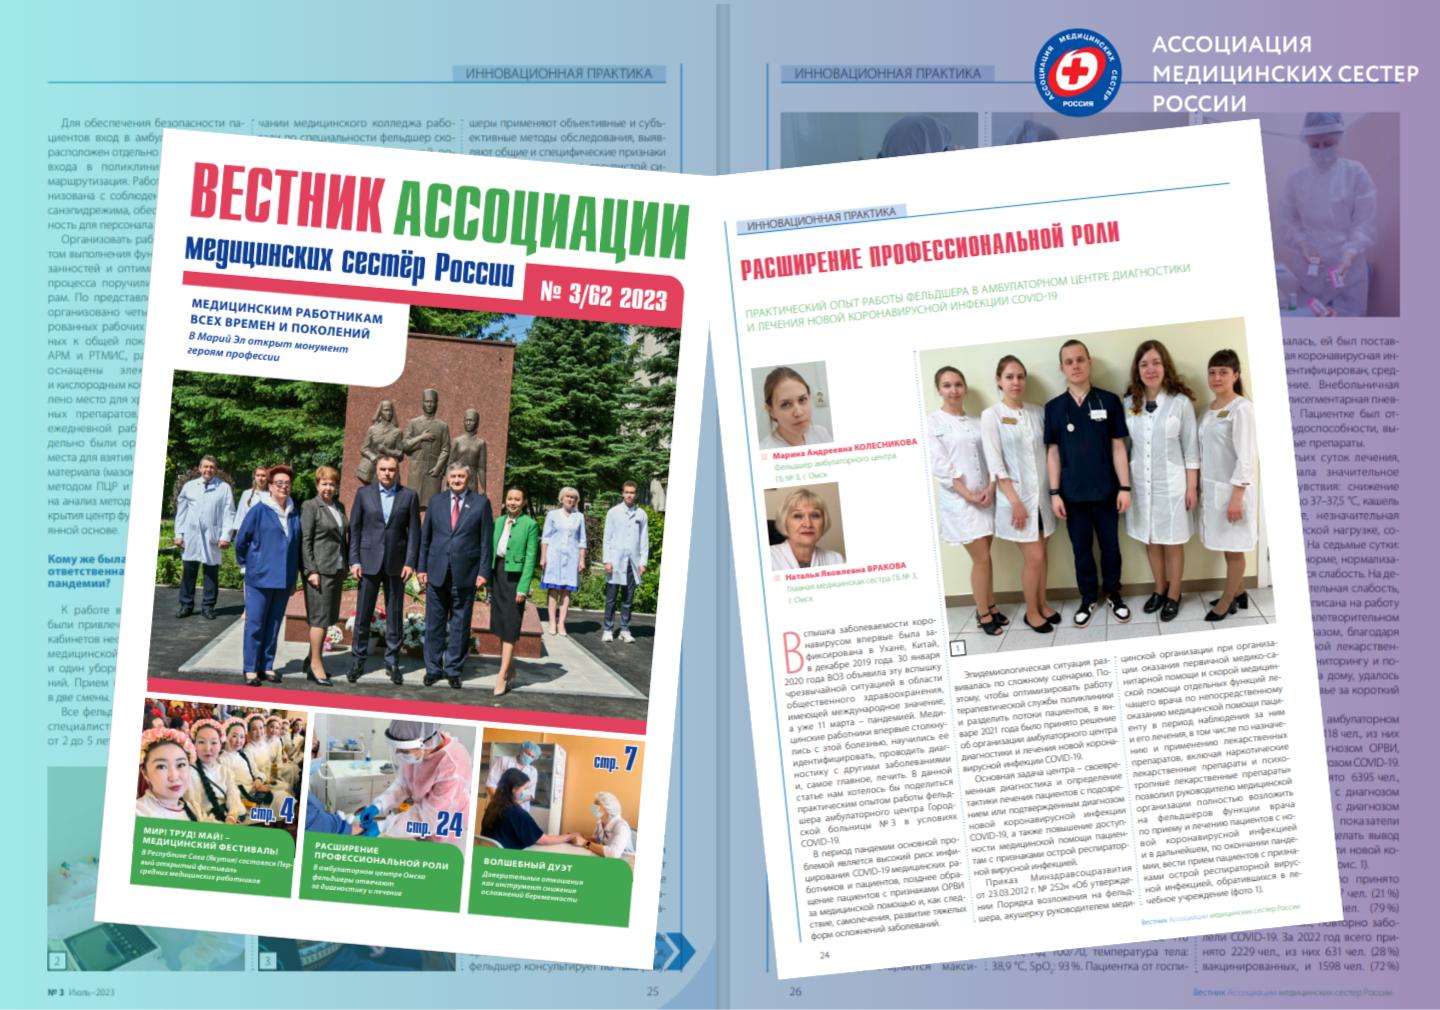 Расширение роли специалистов первичного звена: Омский опыт работы фельдшера в амбулаторном центре